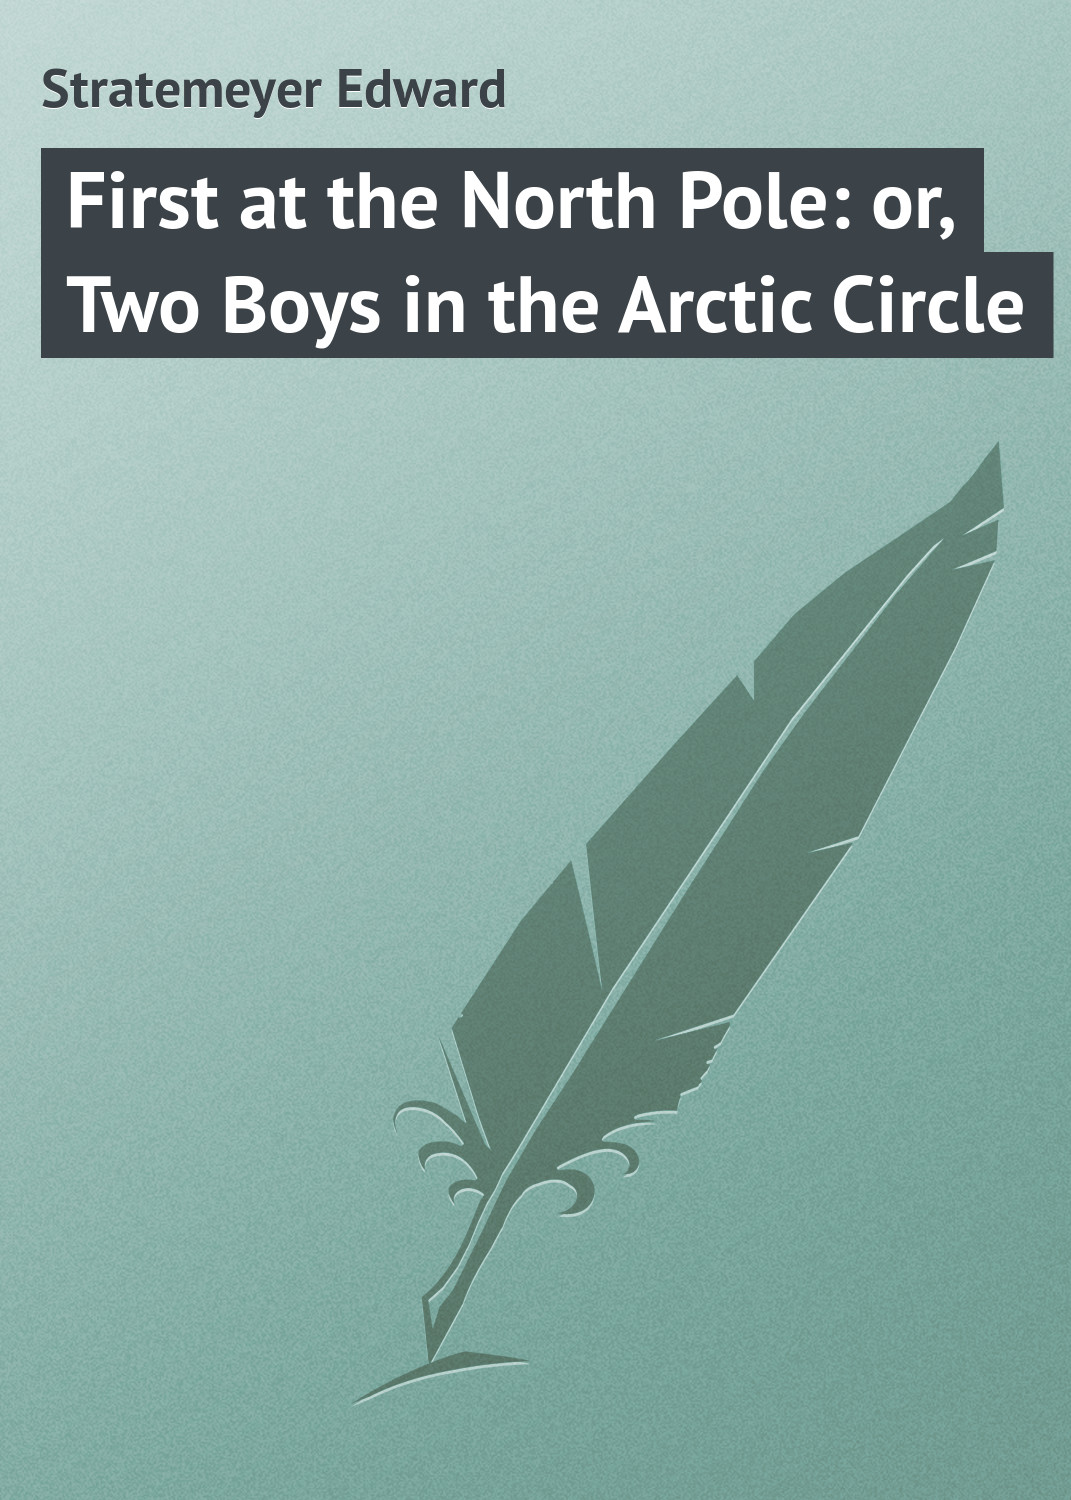 Книга First at the North Pole: or, Two Boys in the Arctic Circle из серии , созданная Edward Stratemeyer, может относится к жанру Приключения: прочее, Зарубежная классика. Стоимость электронной книги First at the North Pole: or, Two Boys in the Arctic Circle с идентификатором 23148715 составляет 5.99 руб.